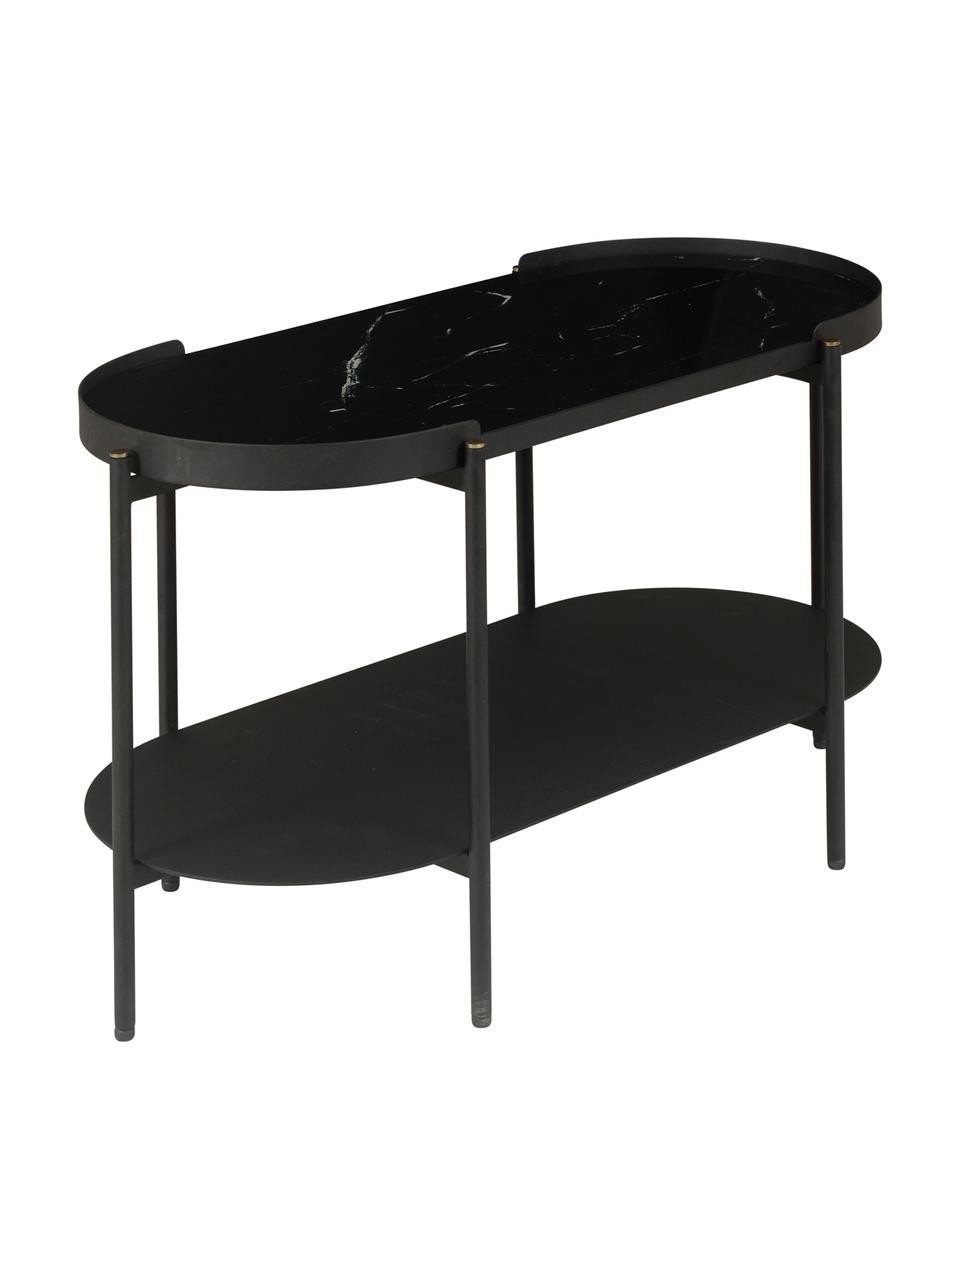 Tavolino da salotto in nero marmorizzato Complice, Piano d'appoggio: vetro, colorato, Struttura: metallo, verniciato a pol, Nero, Larg. 80 x Alt. 47 cm